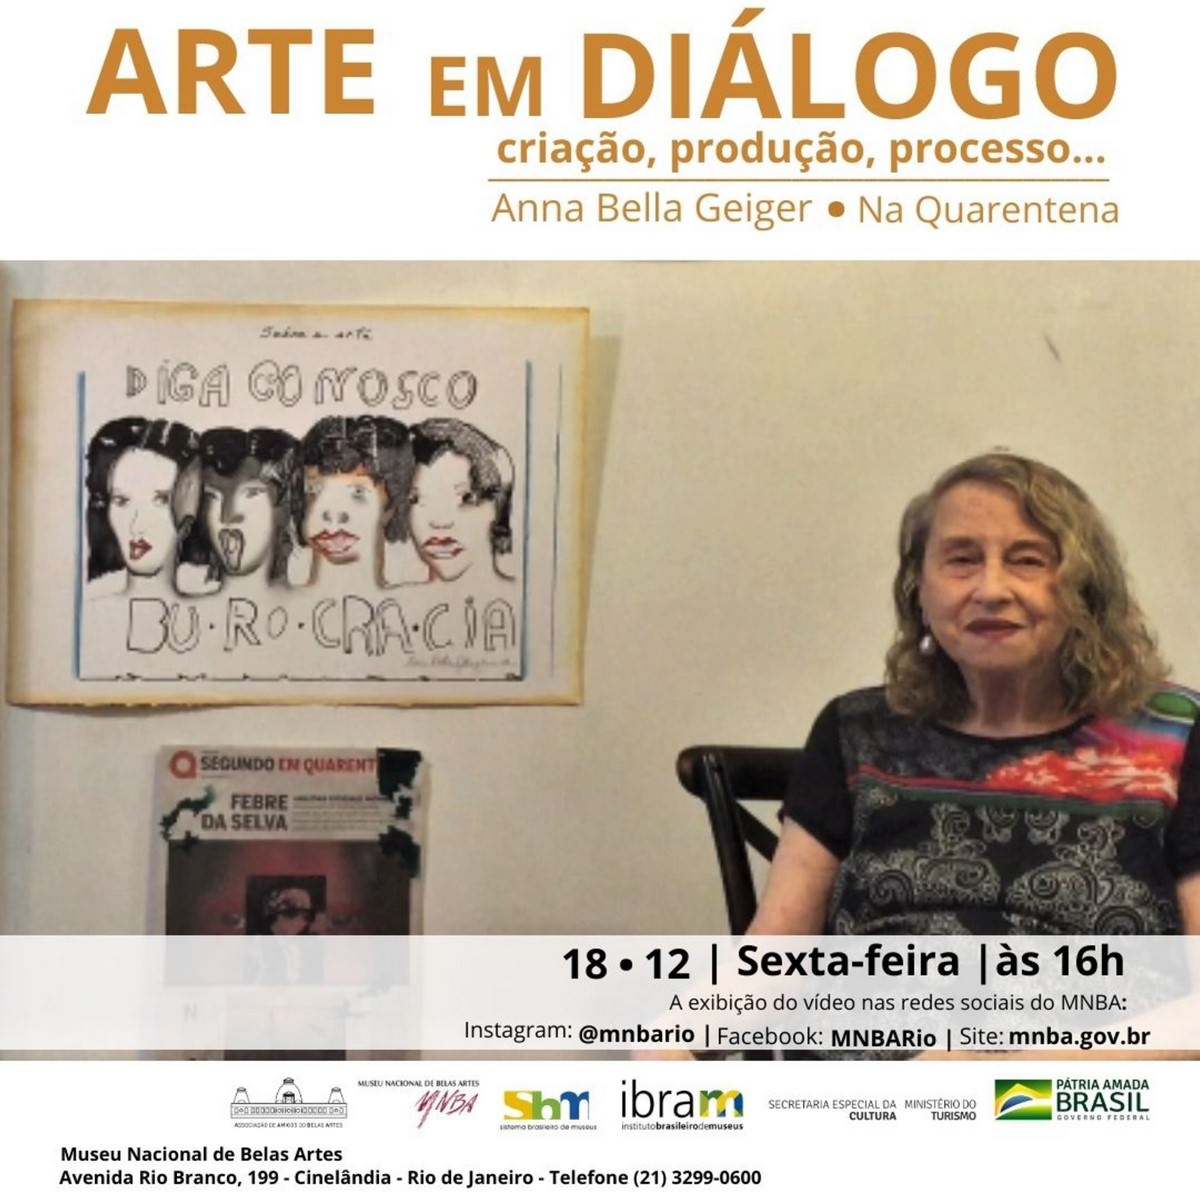 Progetto Art in Dialogue, in quarantena, com Annabella Geiger, nella MNBA, Aletta di filatoio. Rivelazione.